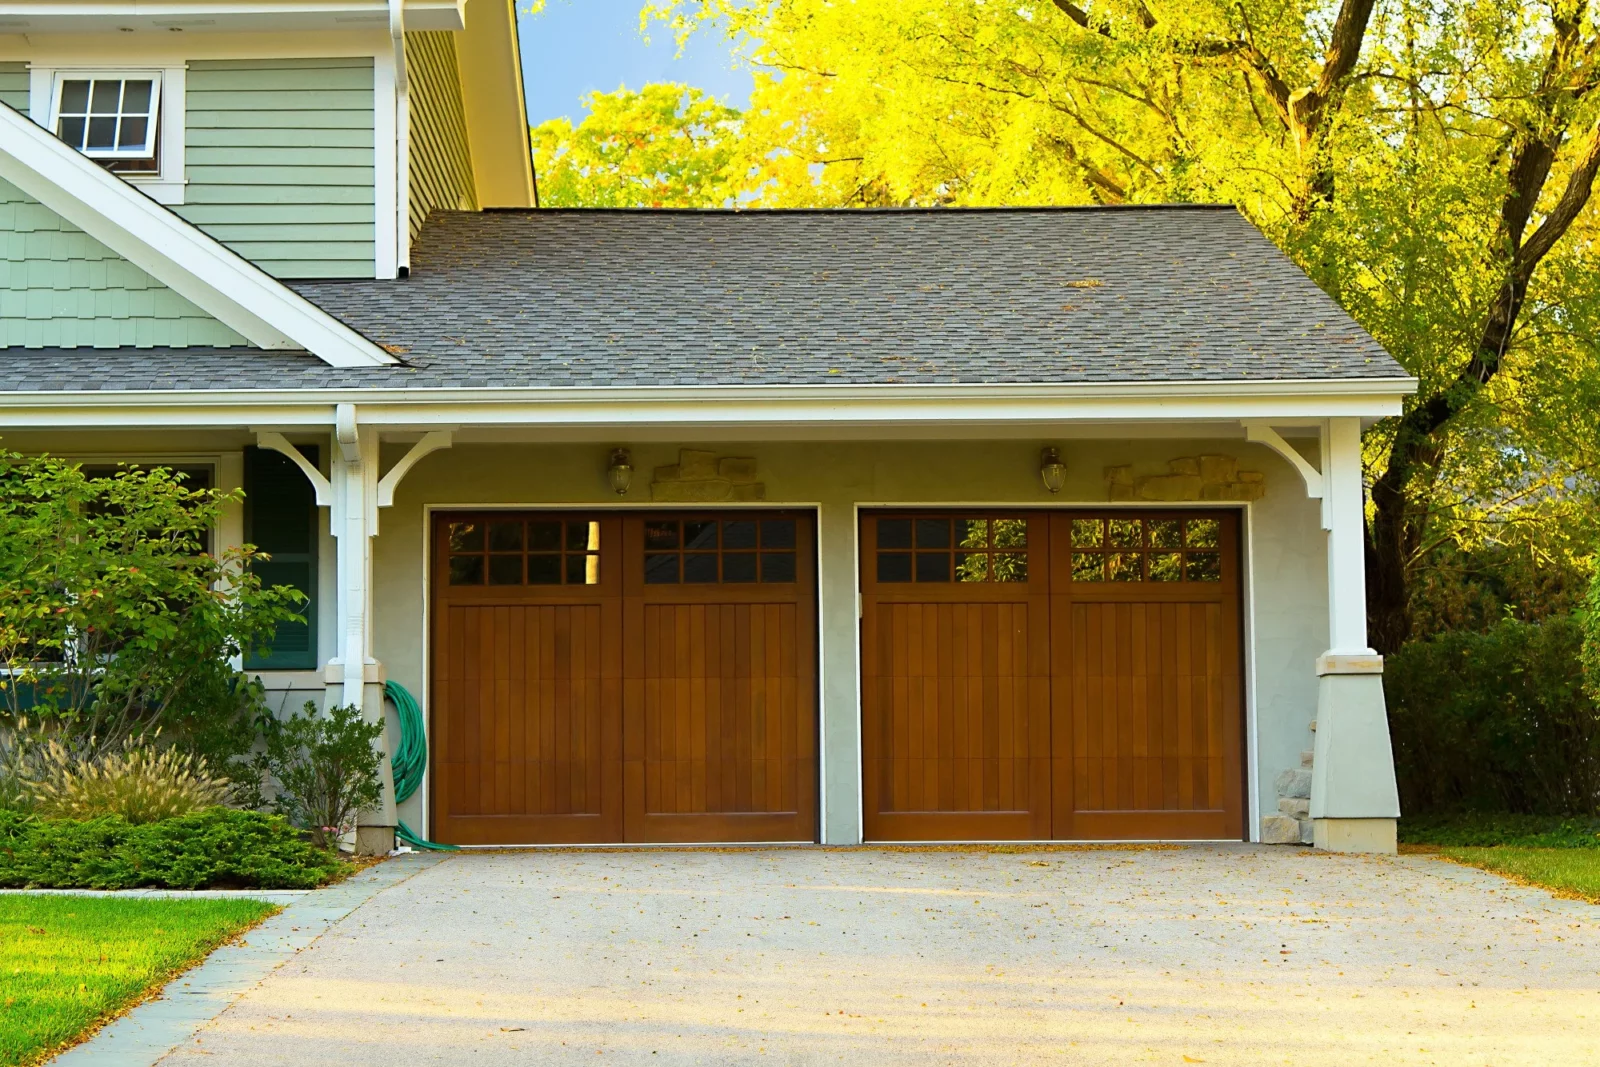 types of garage doors